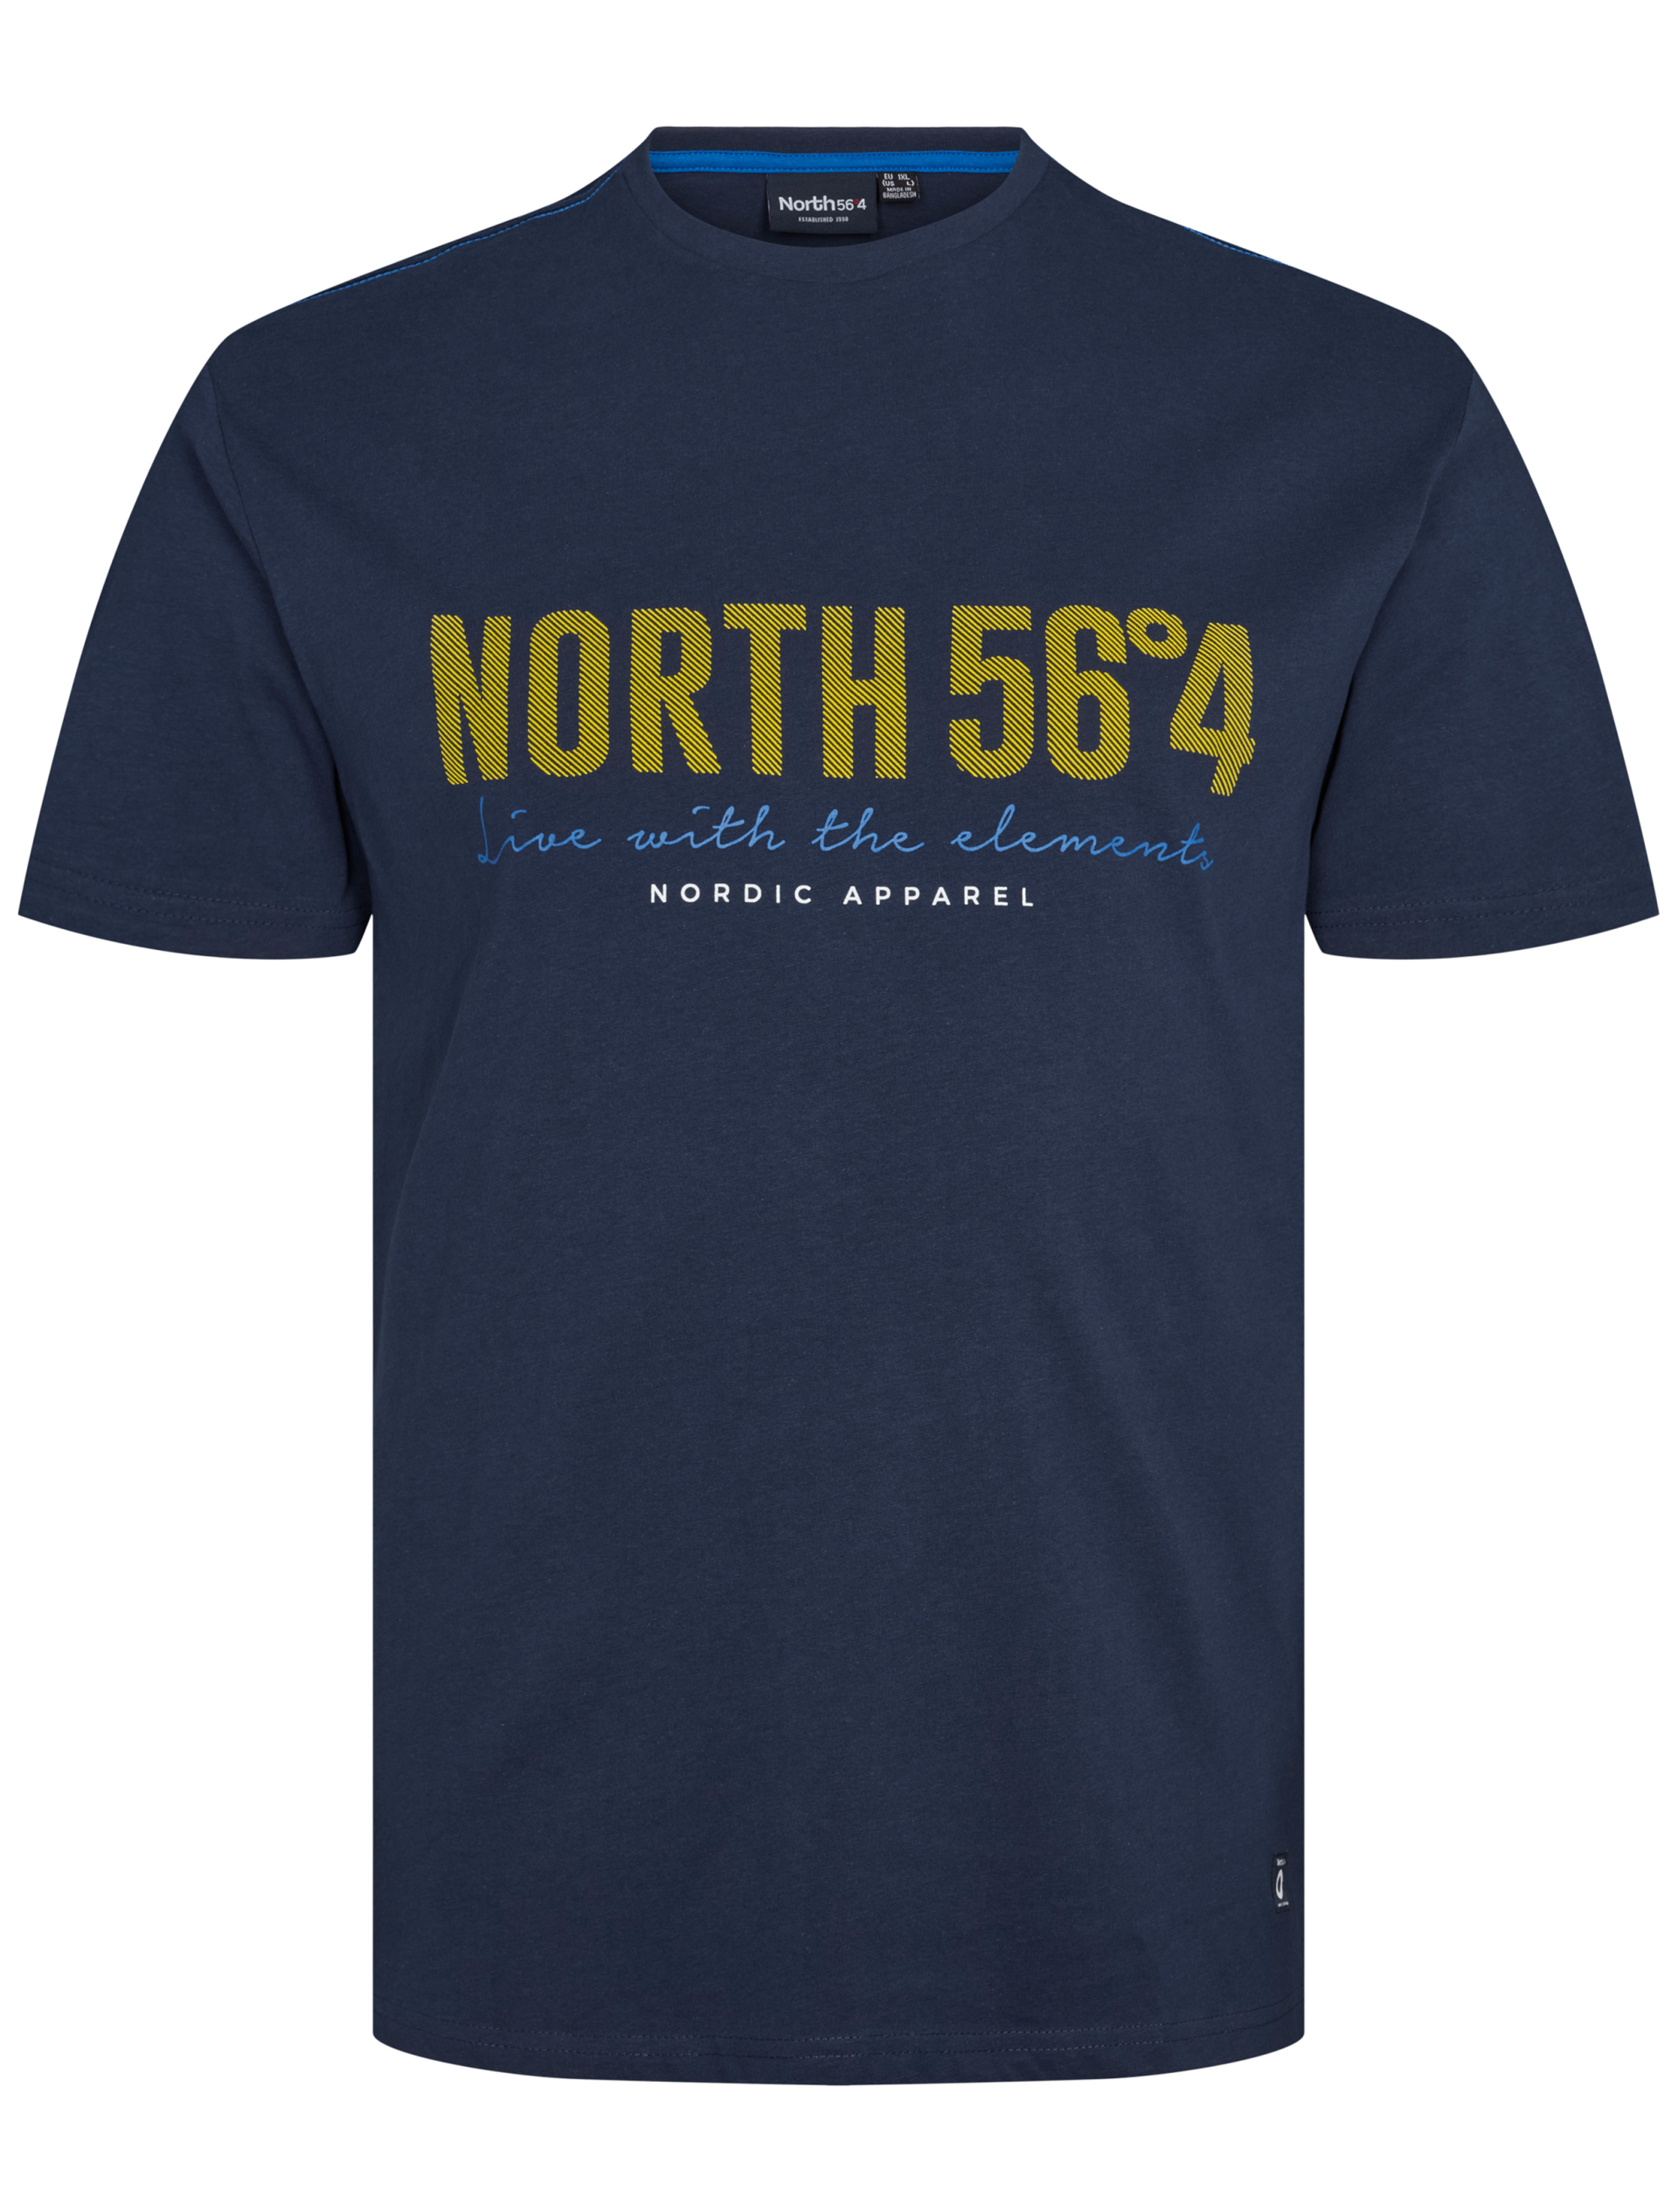 North T-shirt blå / 0580 navy blue